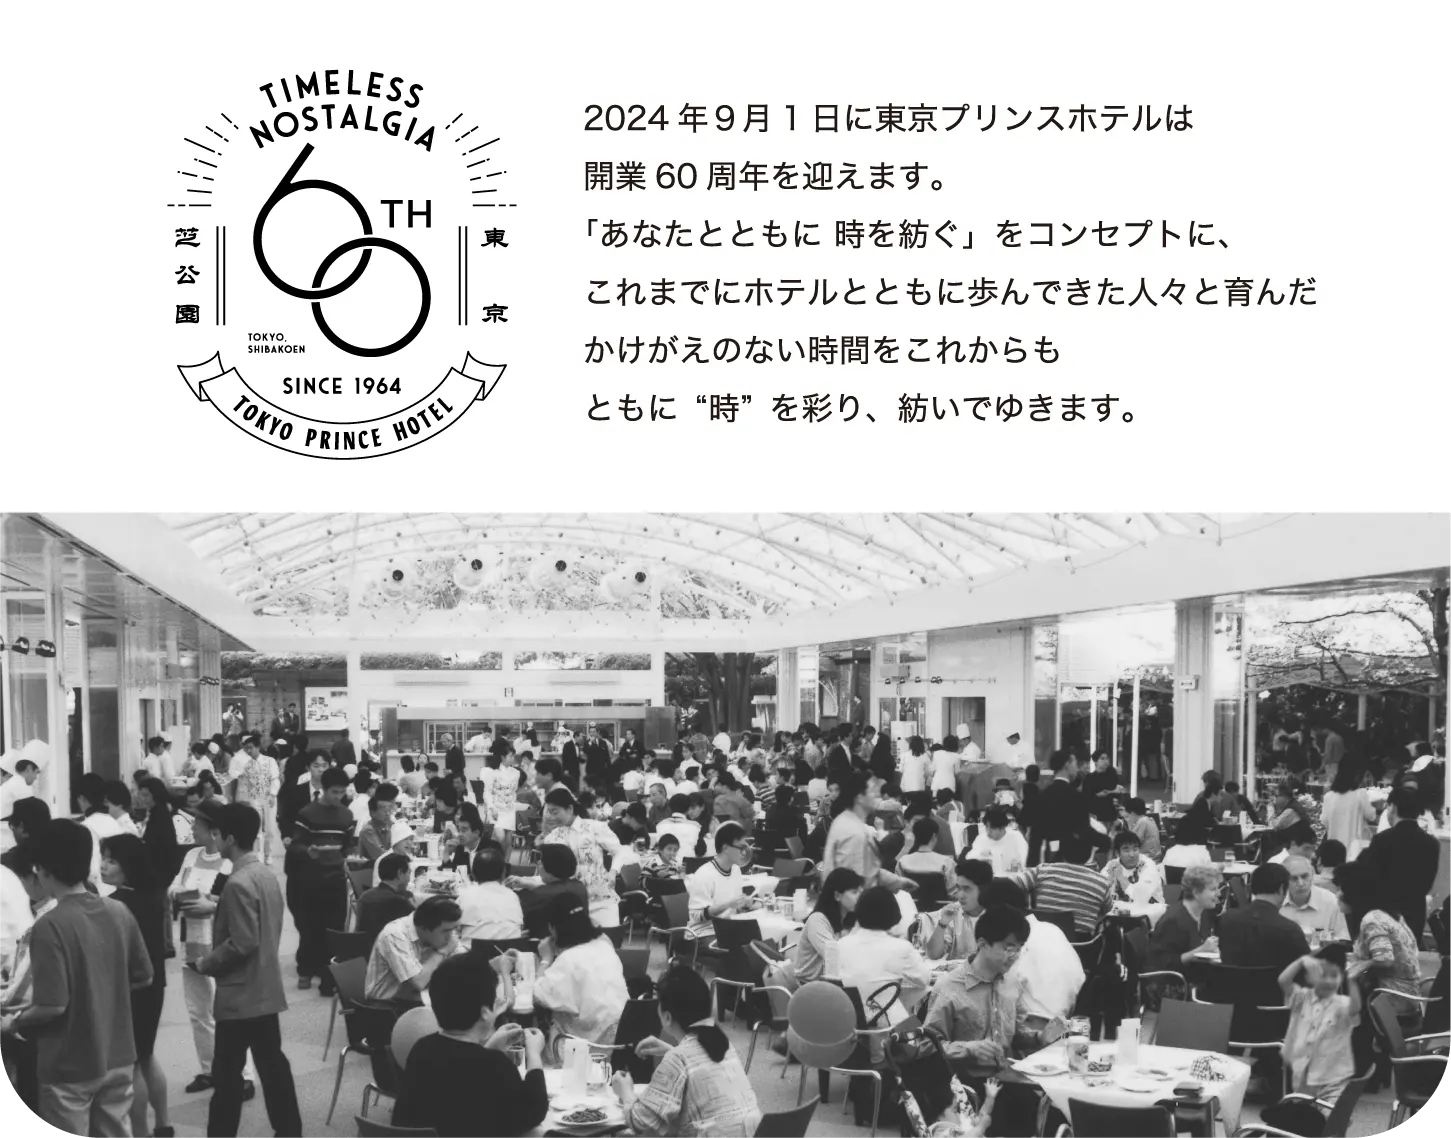 TIMELESS NOSTALGIA 60TH TOKYO PRINCE HOTEL 2024年９月1日に東京プリンスホテルは開業60周年を迎えます。「あなたとともに 時を紡ぐ」をコンセプトに、これまでにホテルとともに歩んできた人々と育んだかけがえのない時間をこれからもともに“時”を彩り、紡いでゆきます。